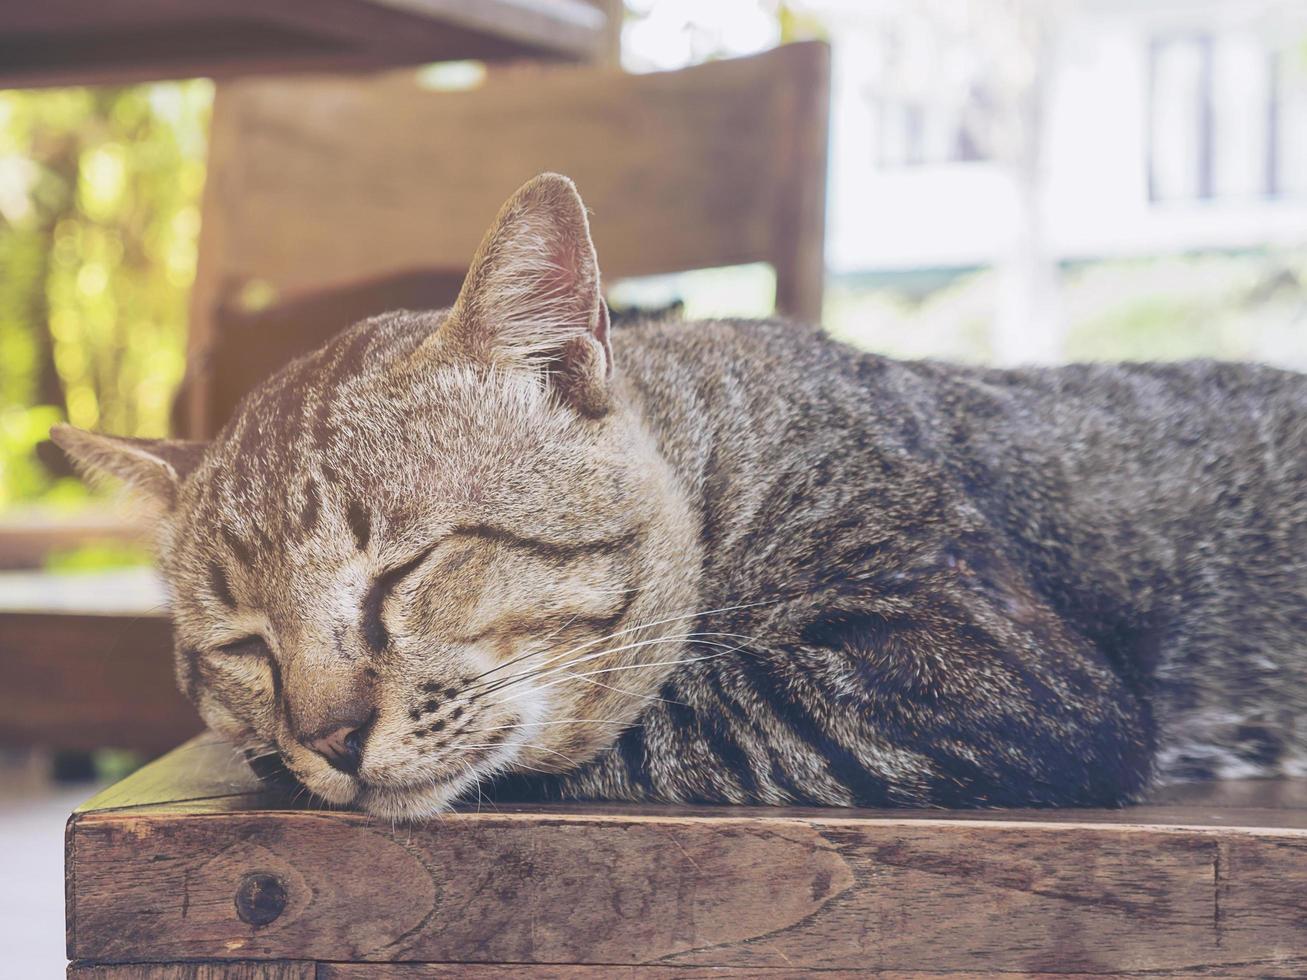 encantador gato perezoso mascota casera tailandesa foto